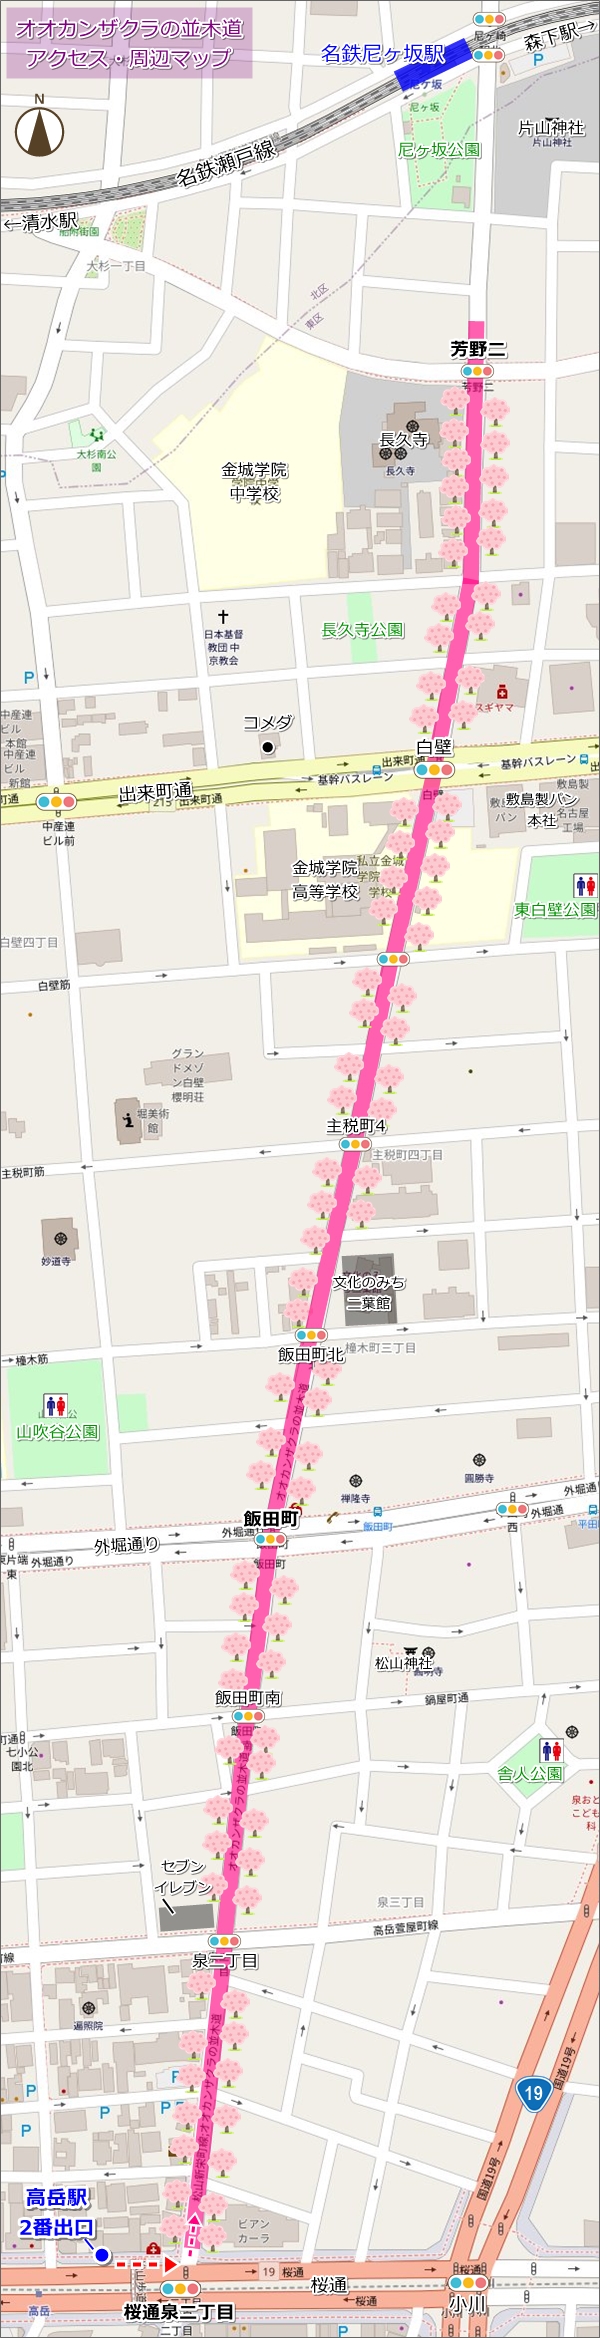 オオカンザクラの並木道(名古屋市東区)アクセスマップ01